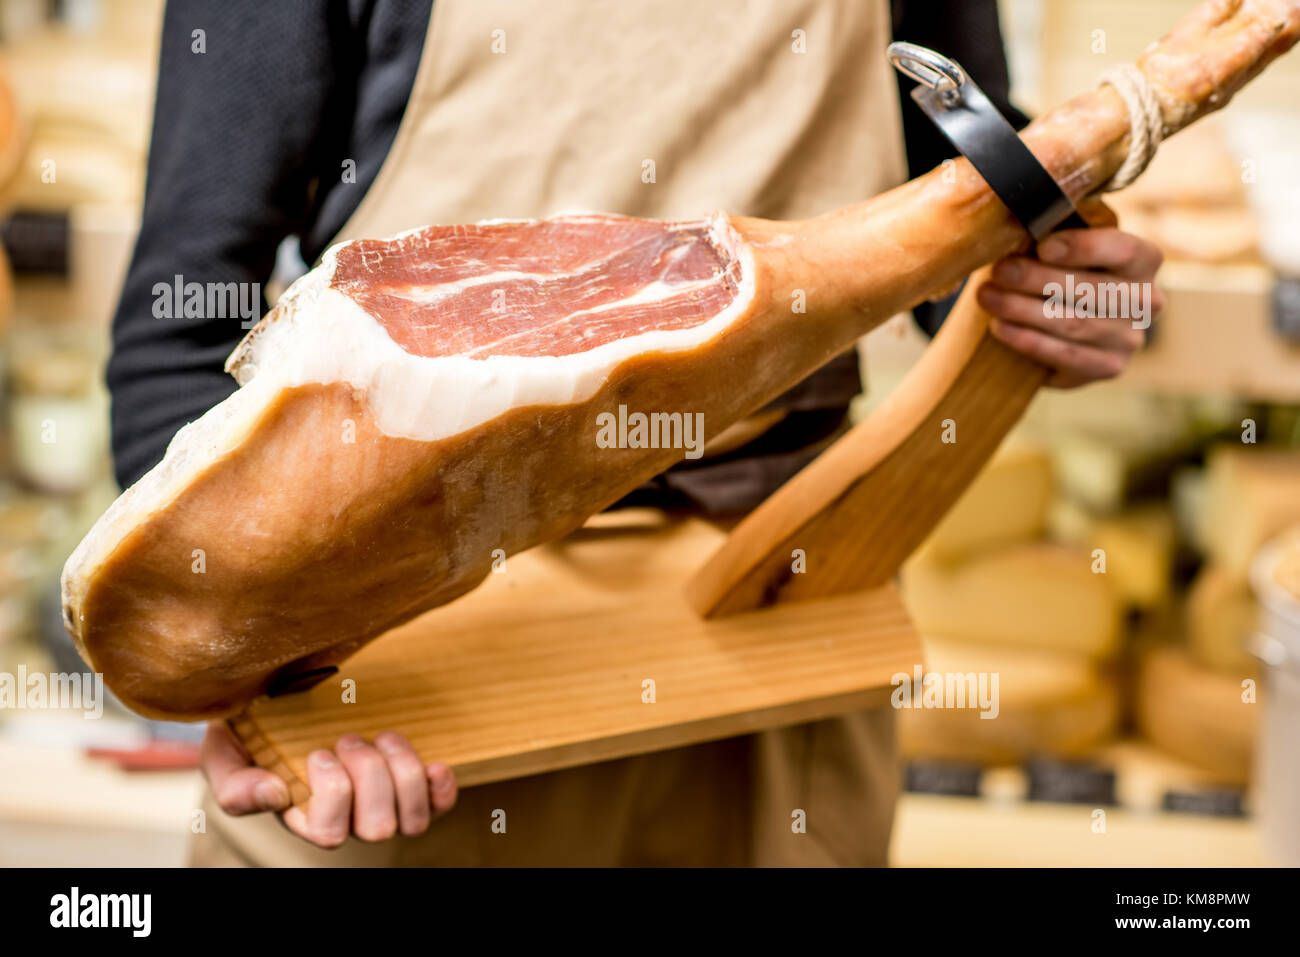 Holding eingeschnittenen prosciutto Bein mit Schinken Halterung im Shop  Stockfotografie - Alamy